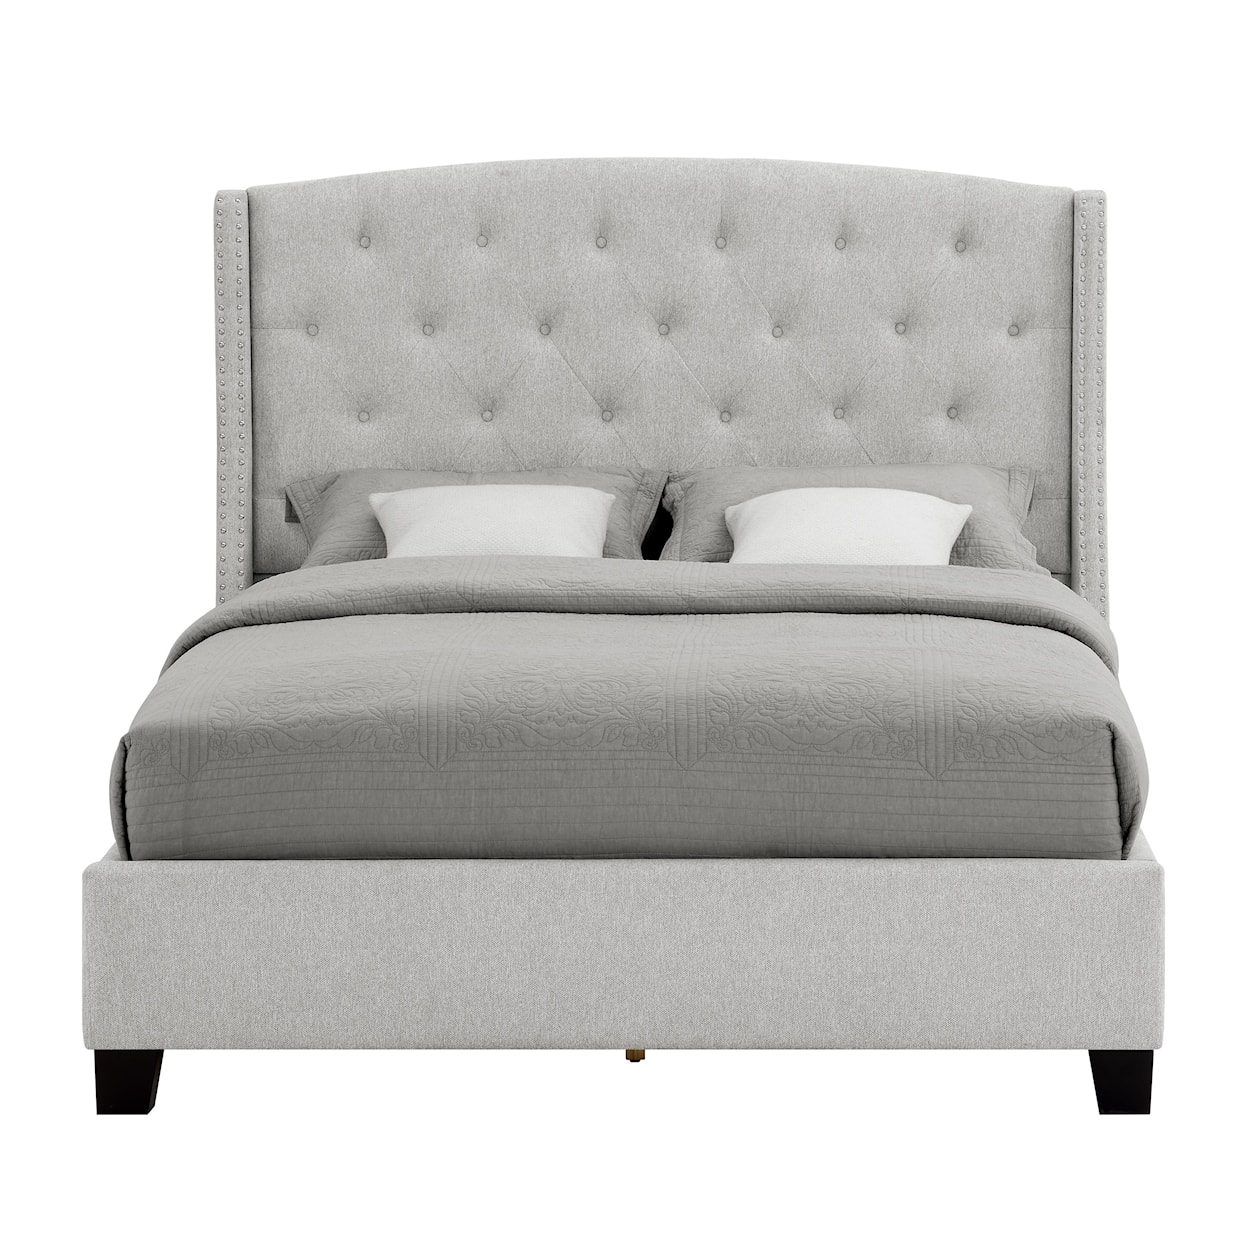 CM Eva Queen Upholstered Bed